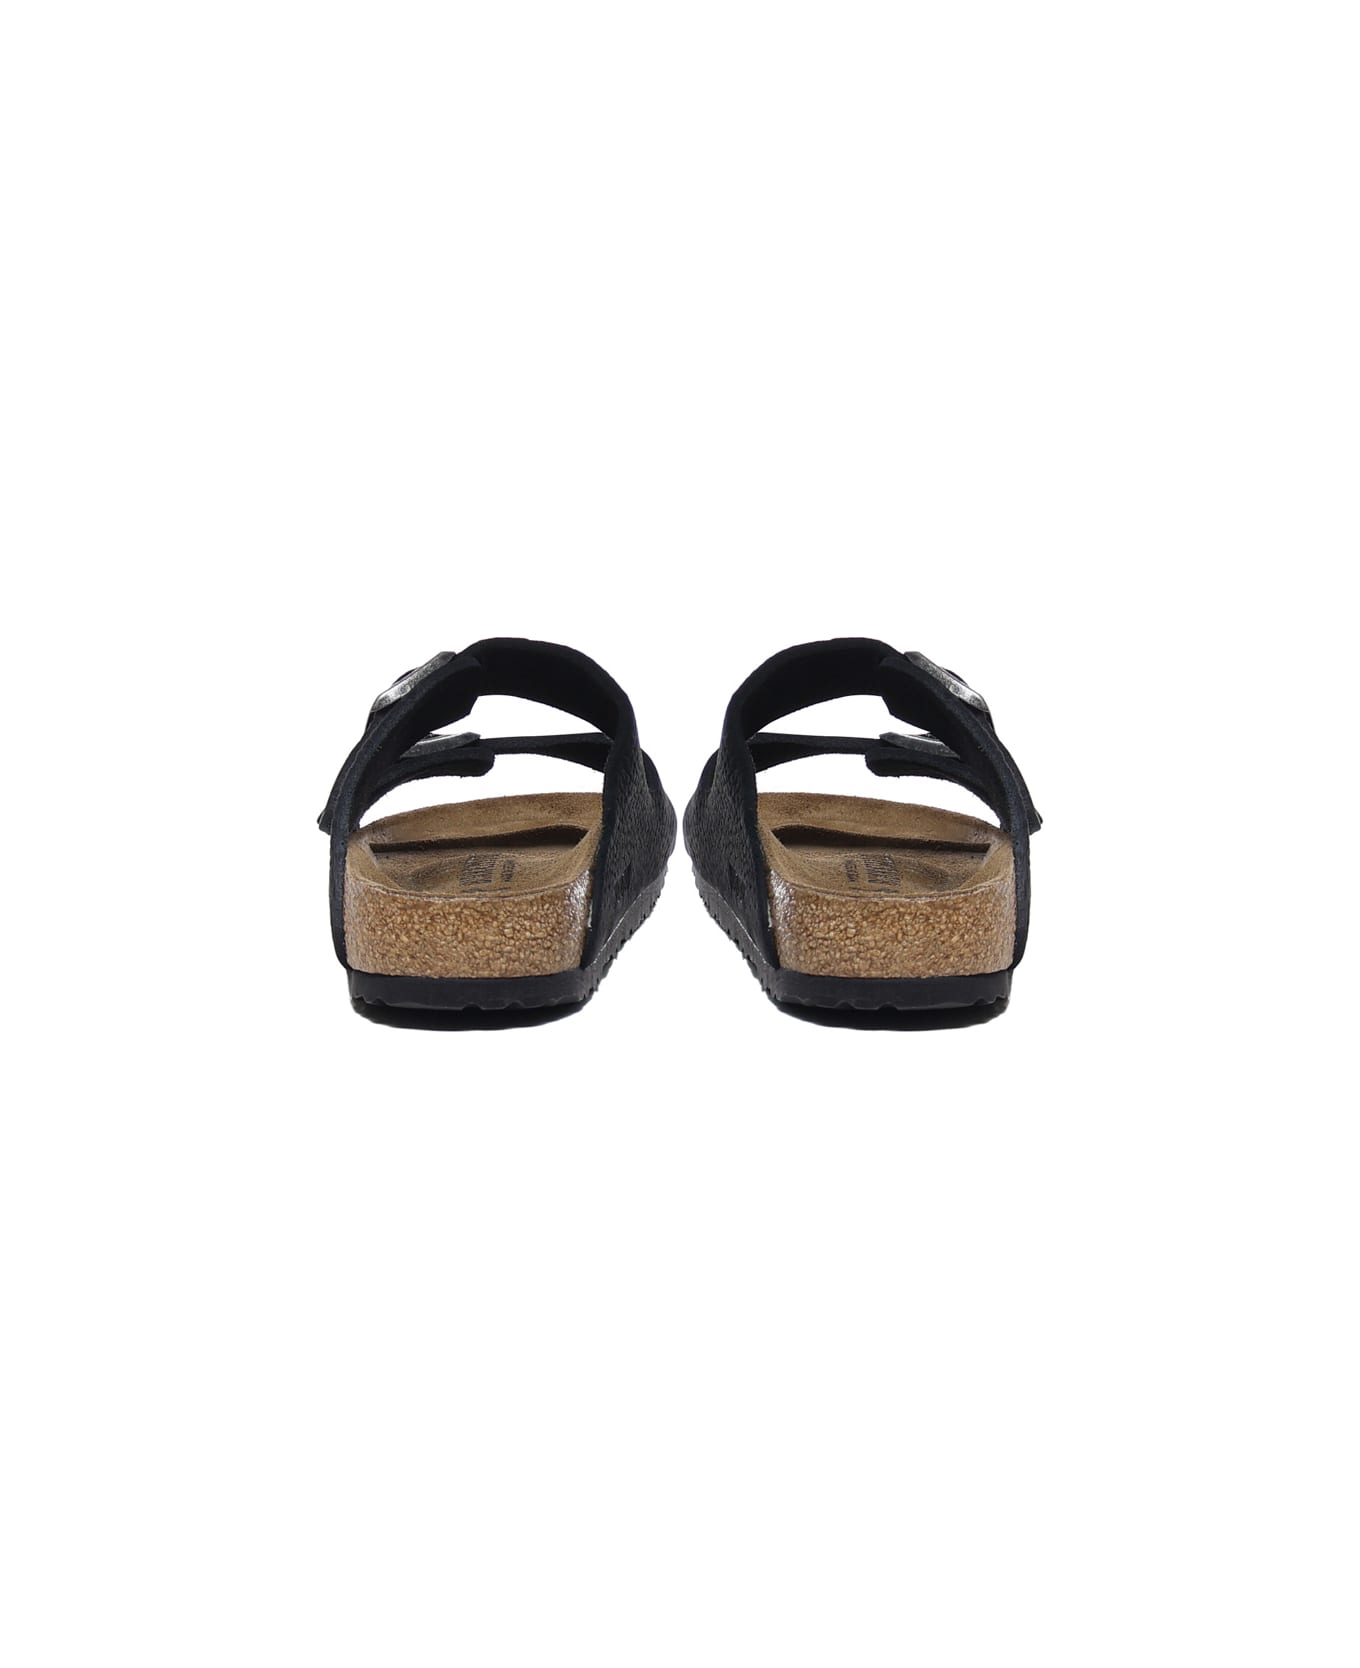 Birkenstock Arizona Sandals In Textured Leather - Black